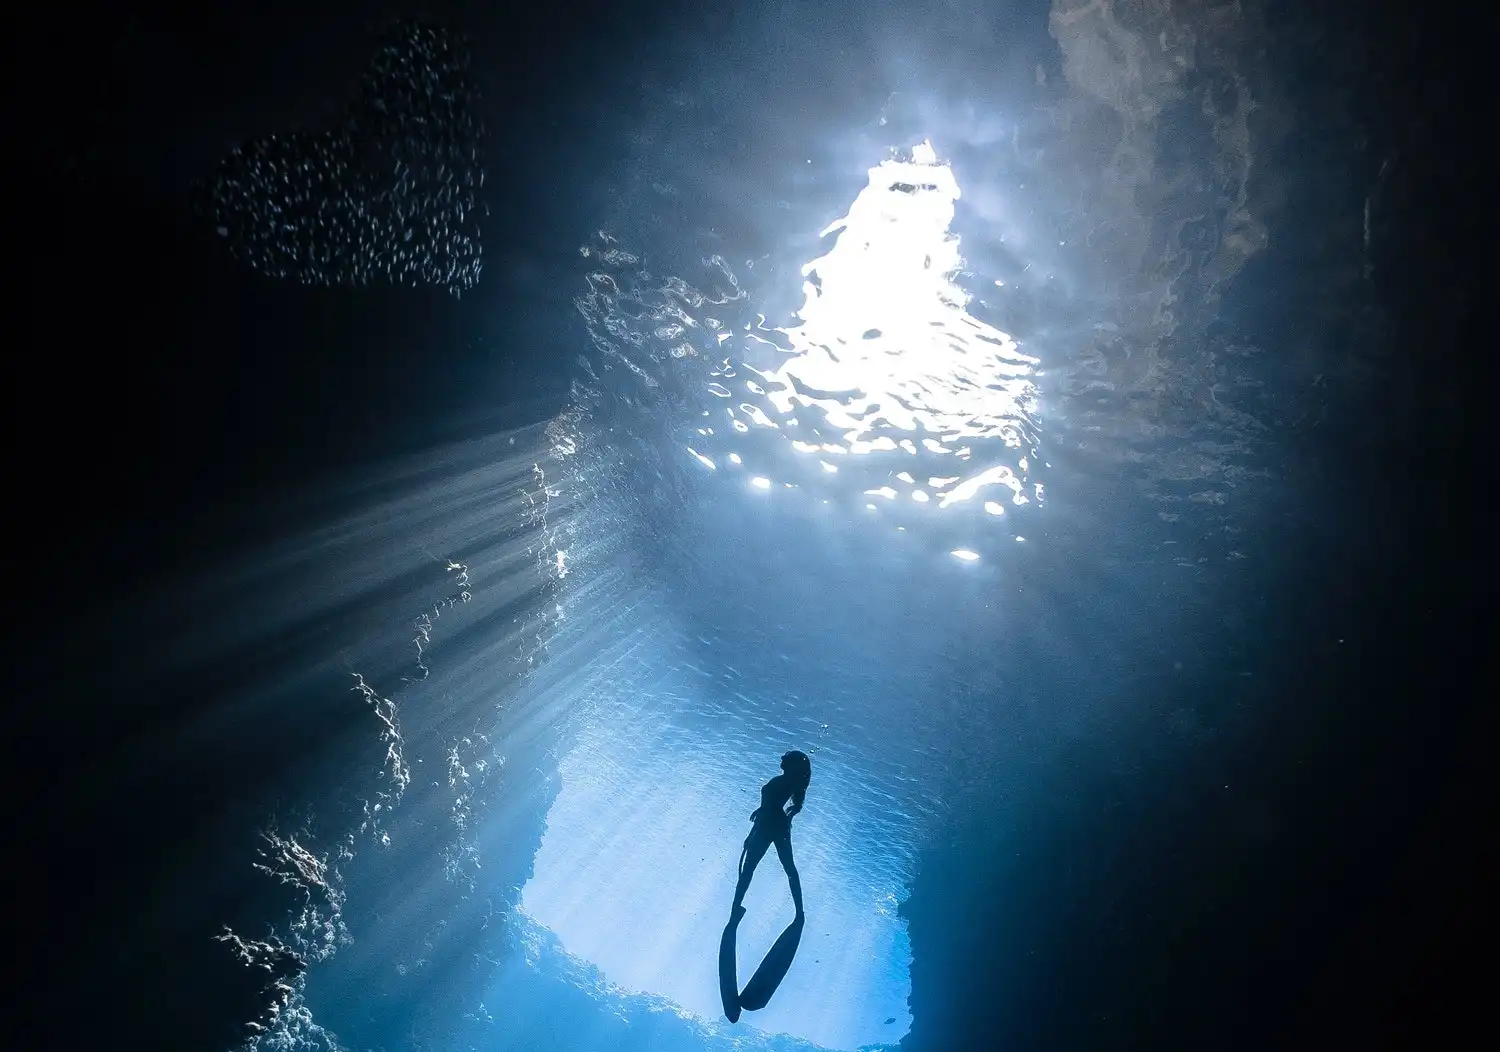 Malori nelle immersioni subacquee: i rischi e i sintomi premonitori